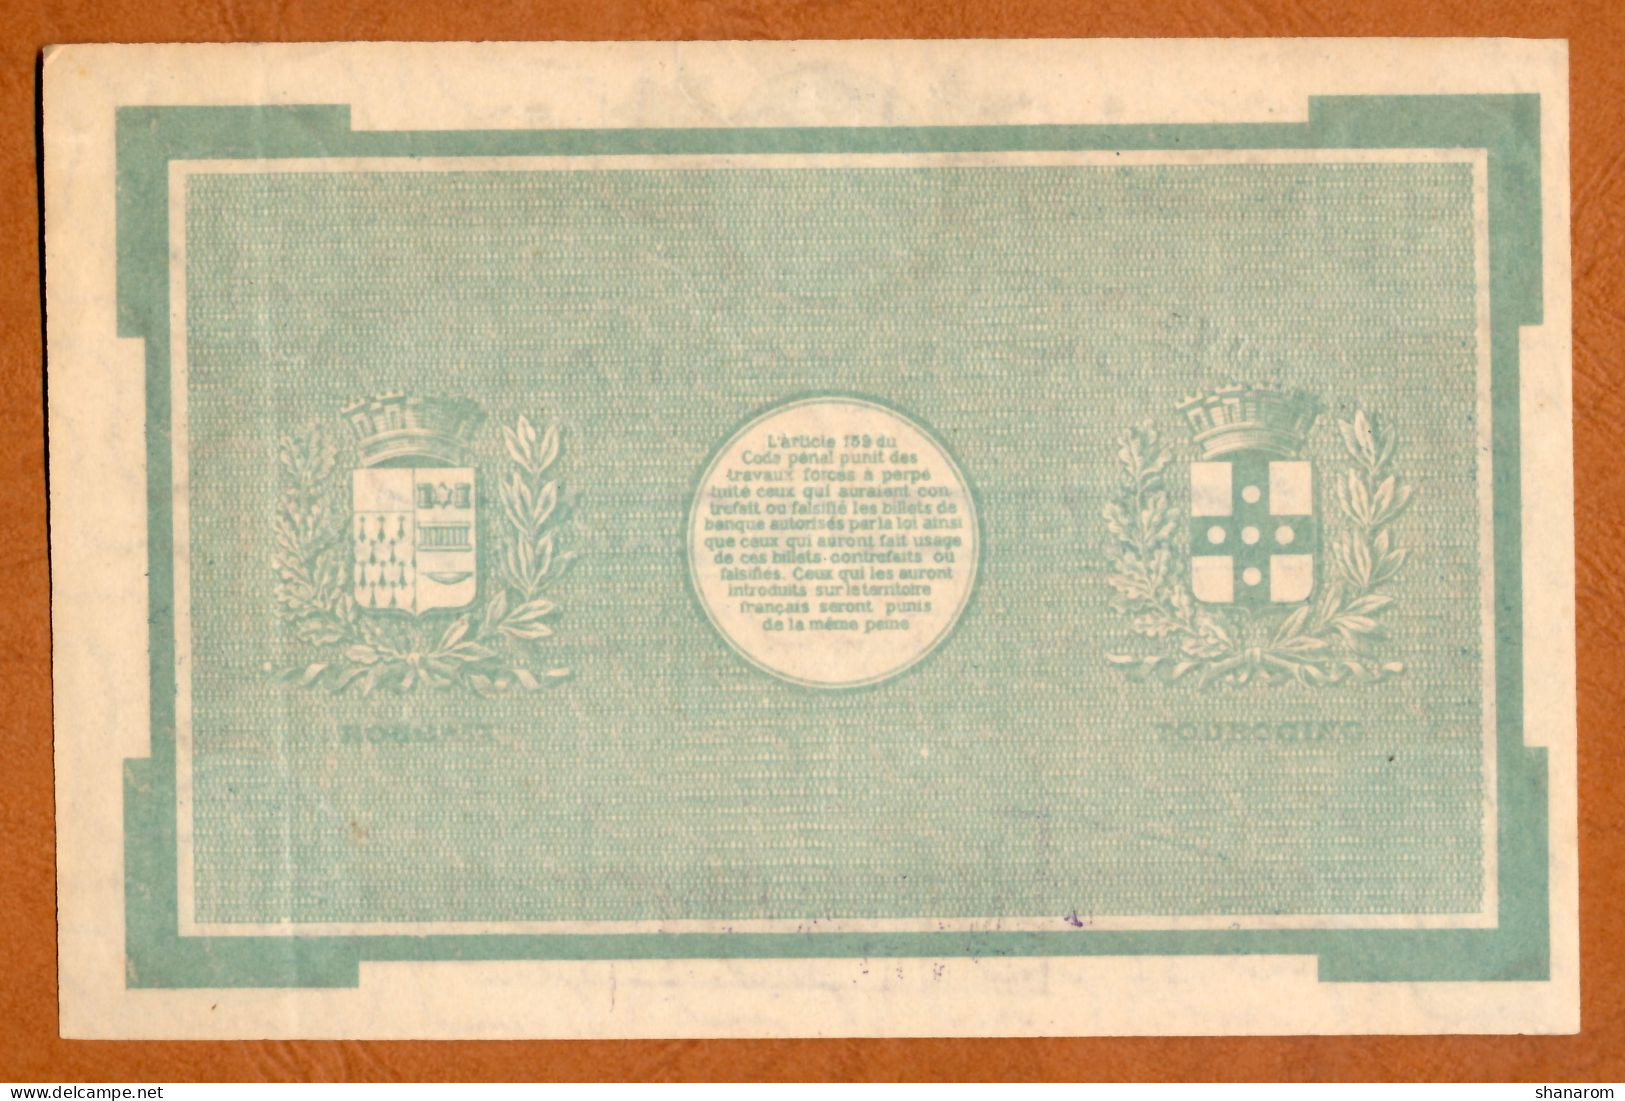 1914-18 // Ville De ROUBAIX & TOURCOING (59) // Sans Date // Bon De Monnaie De 50 Francs // EPREUVE // MUSTER - Bons & Nécessité